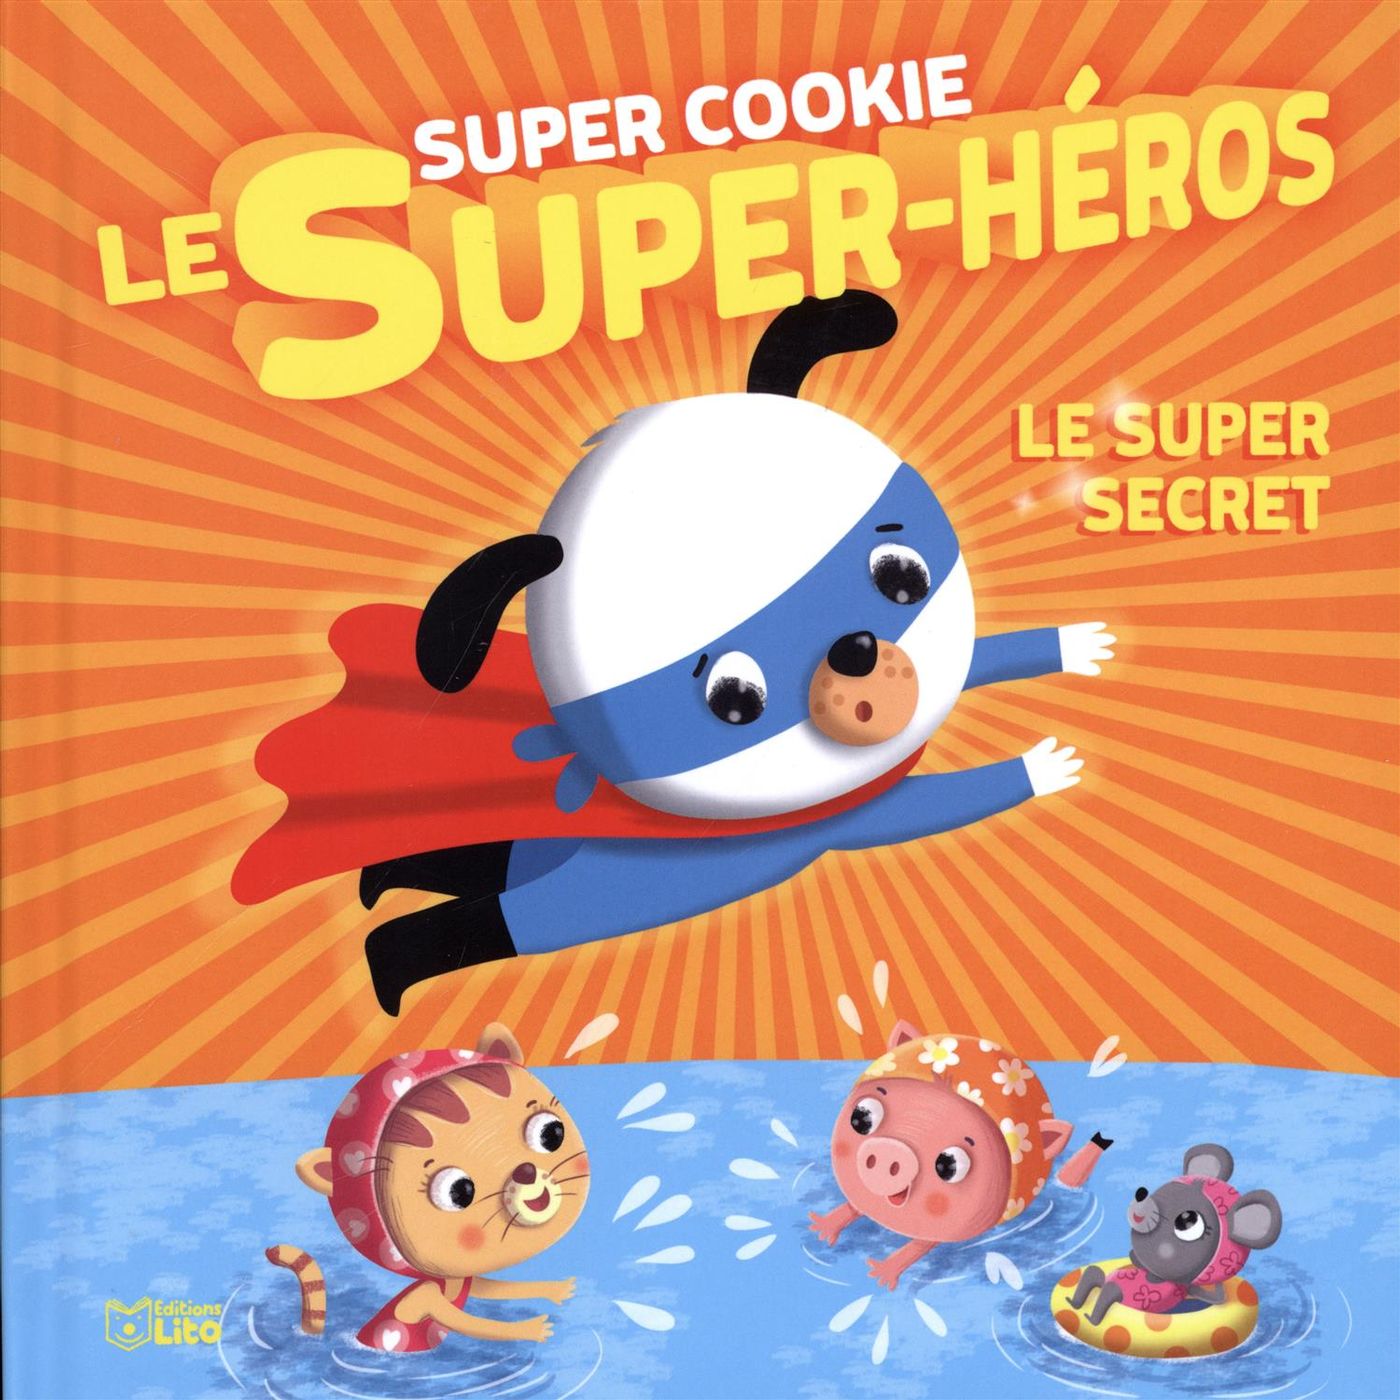 Super Cookie le super-héros # 4 : Le super secret - Rozenn Follio-Vrel